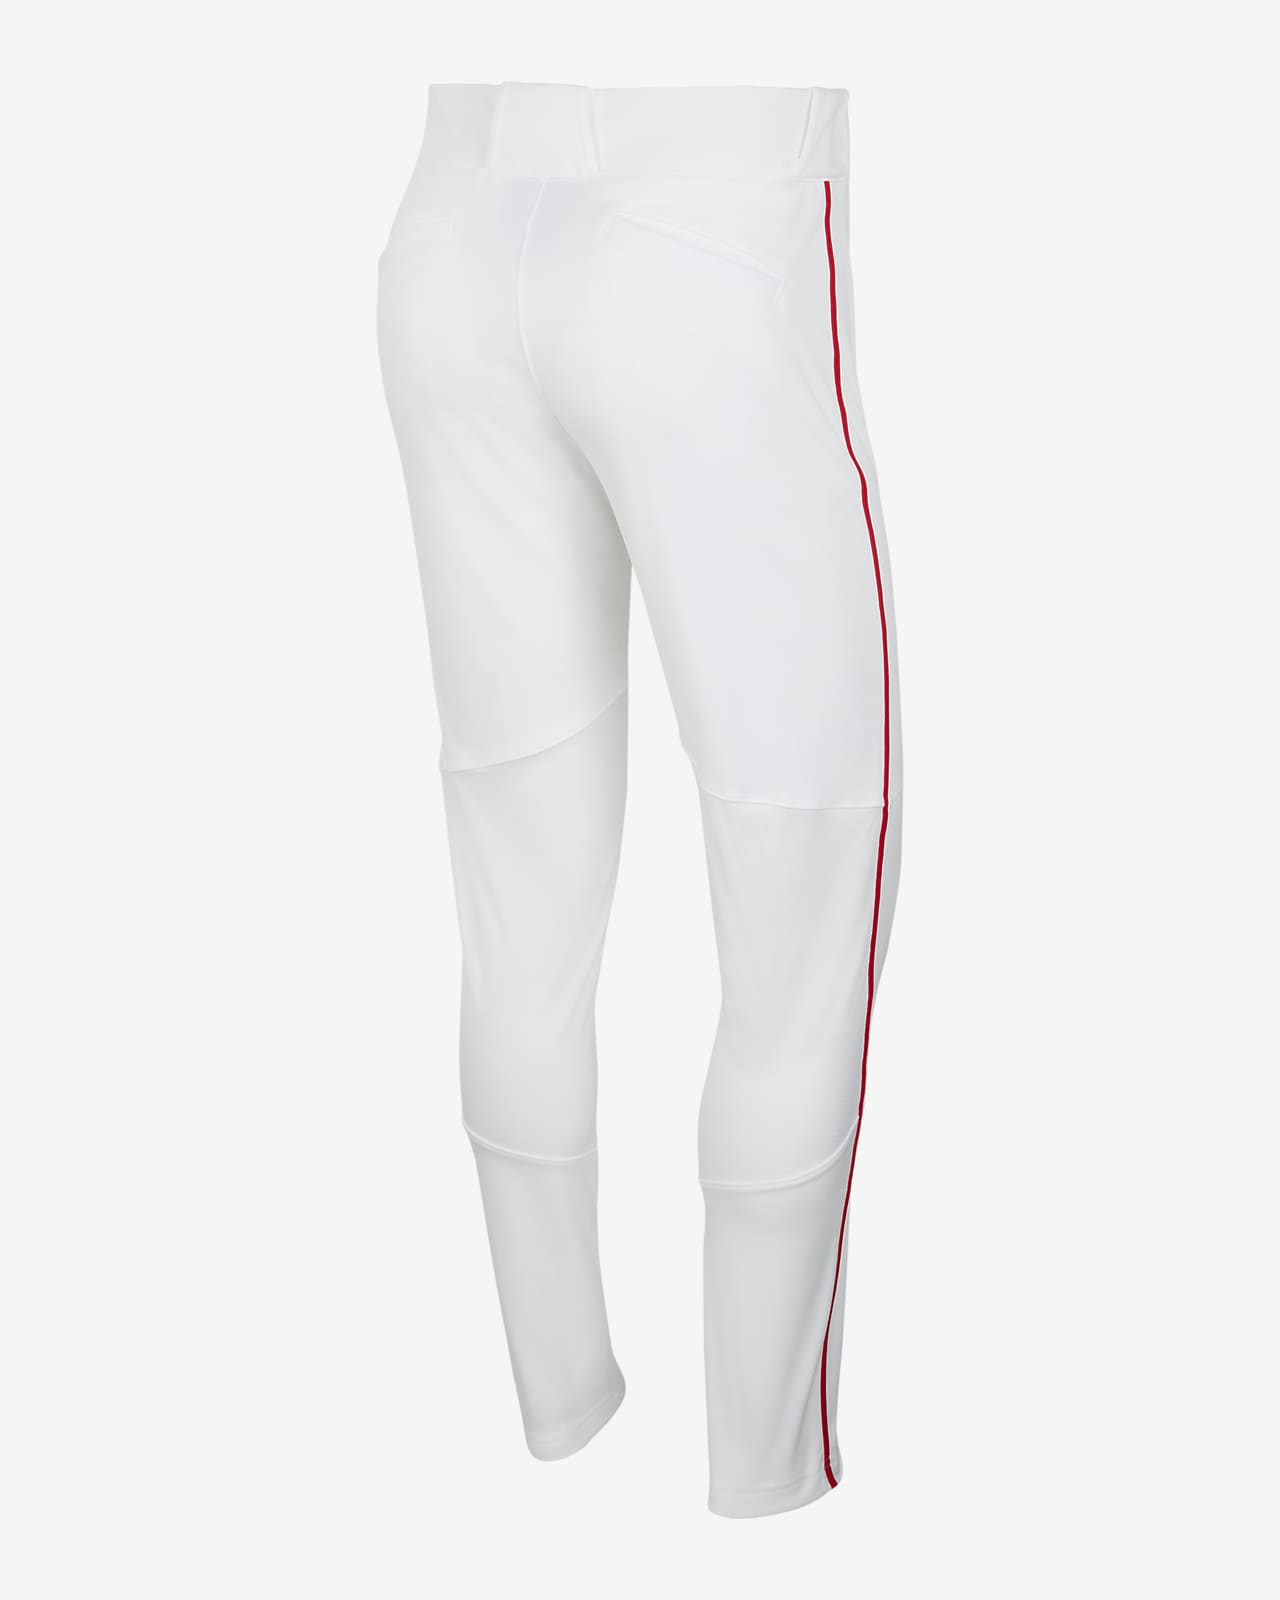 Nike Men's Baseball Pants.